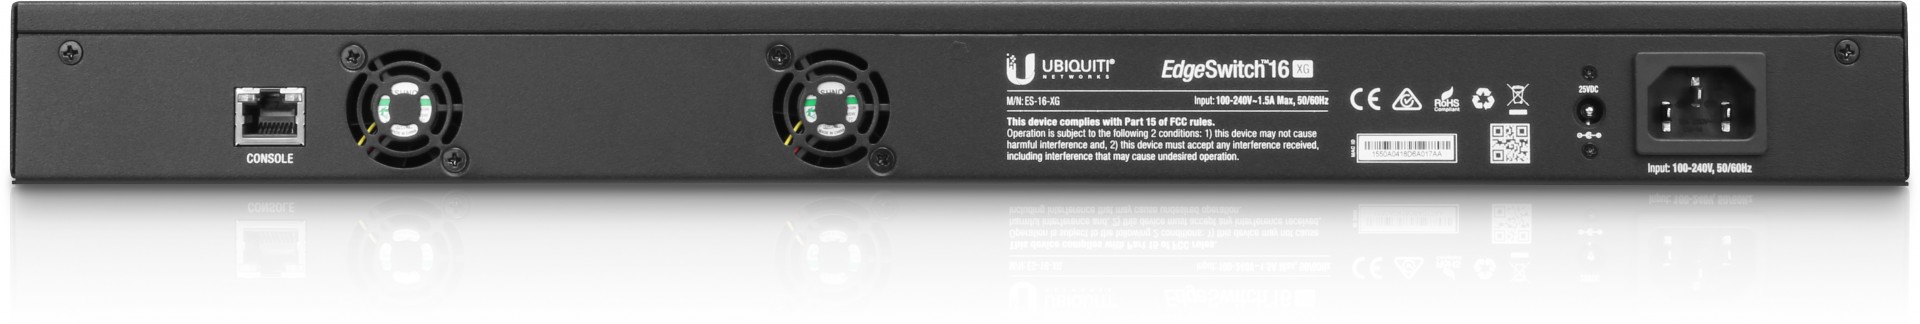 Ubiquiti 10G Ethernet Managed Switch (p/n- ES-16-XG)